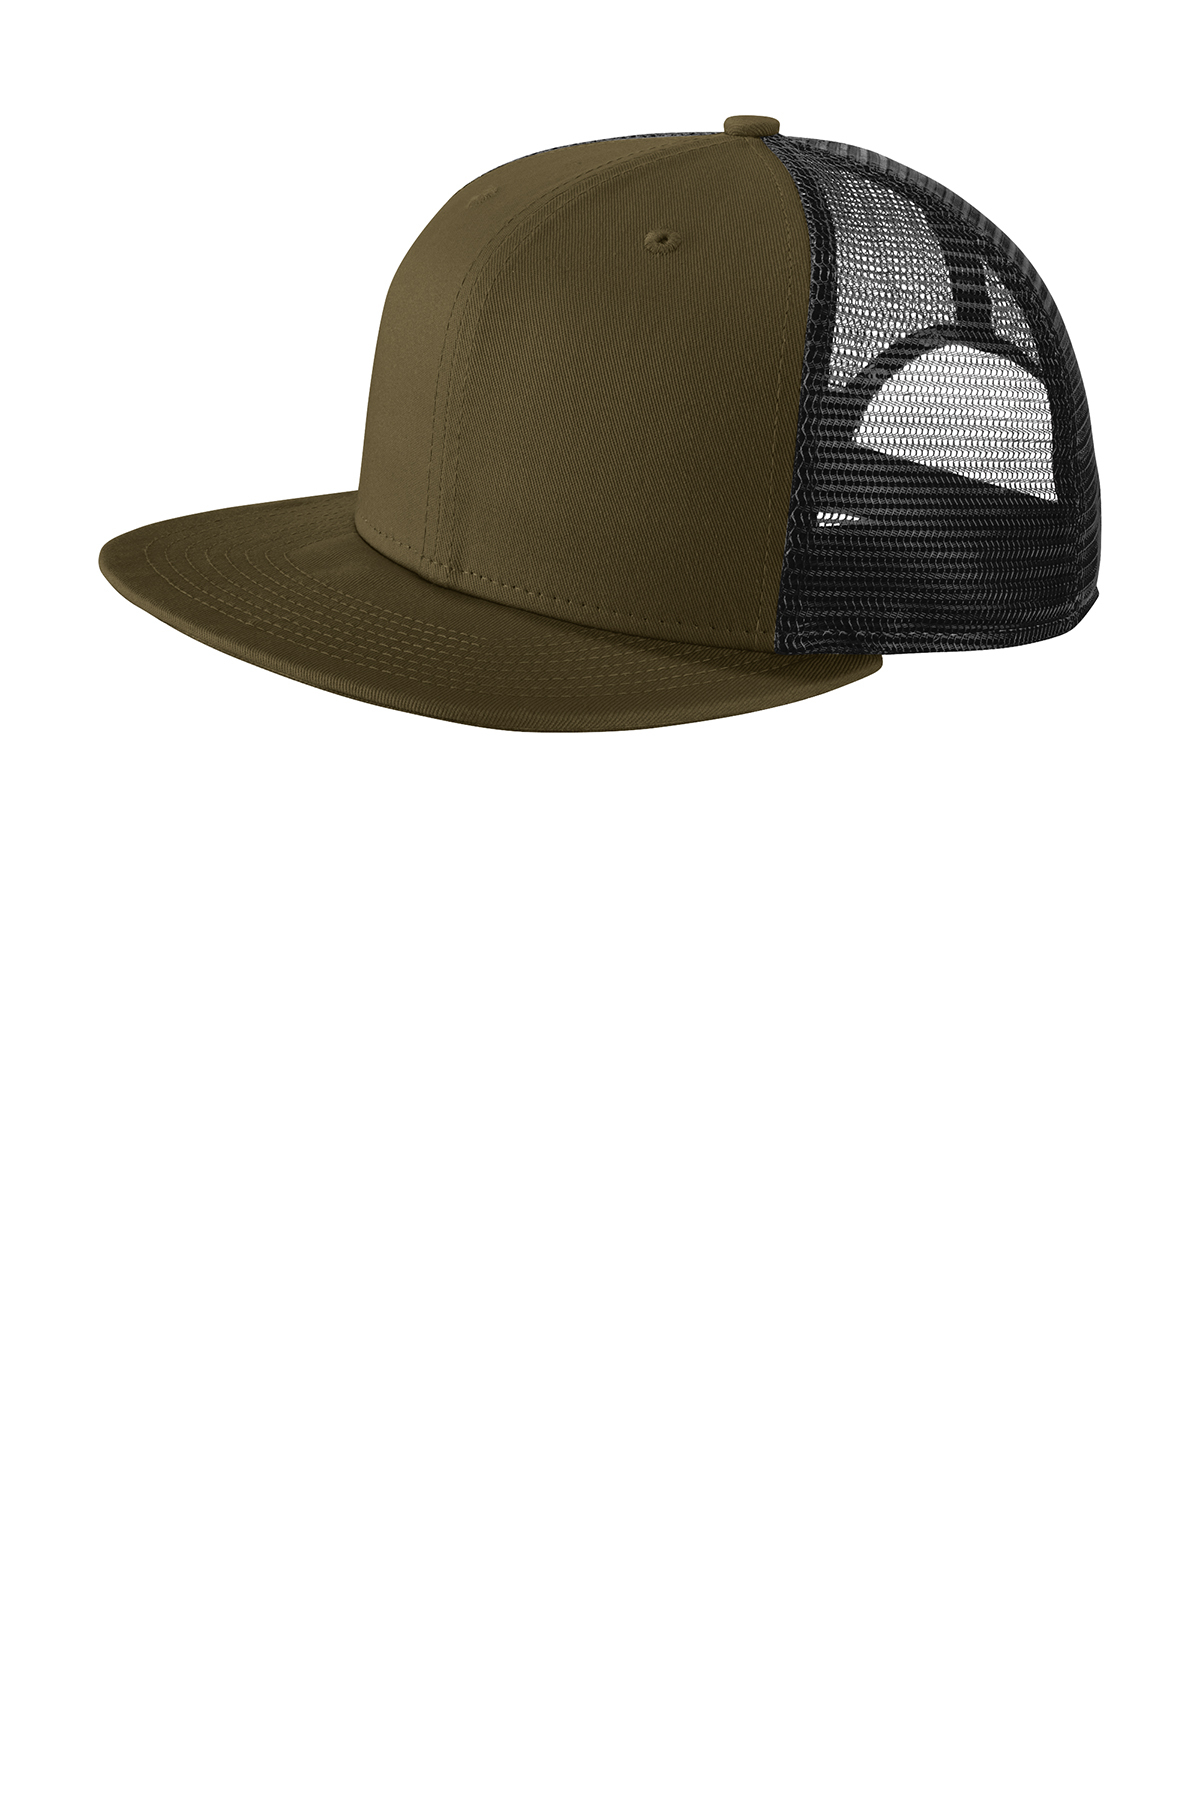 Custom Trucker Hats | Caps Cover Trucker Your Head 